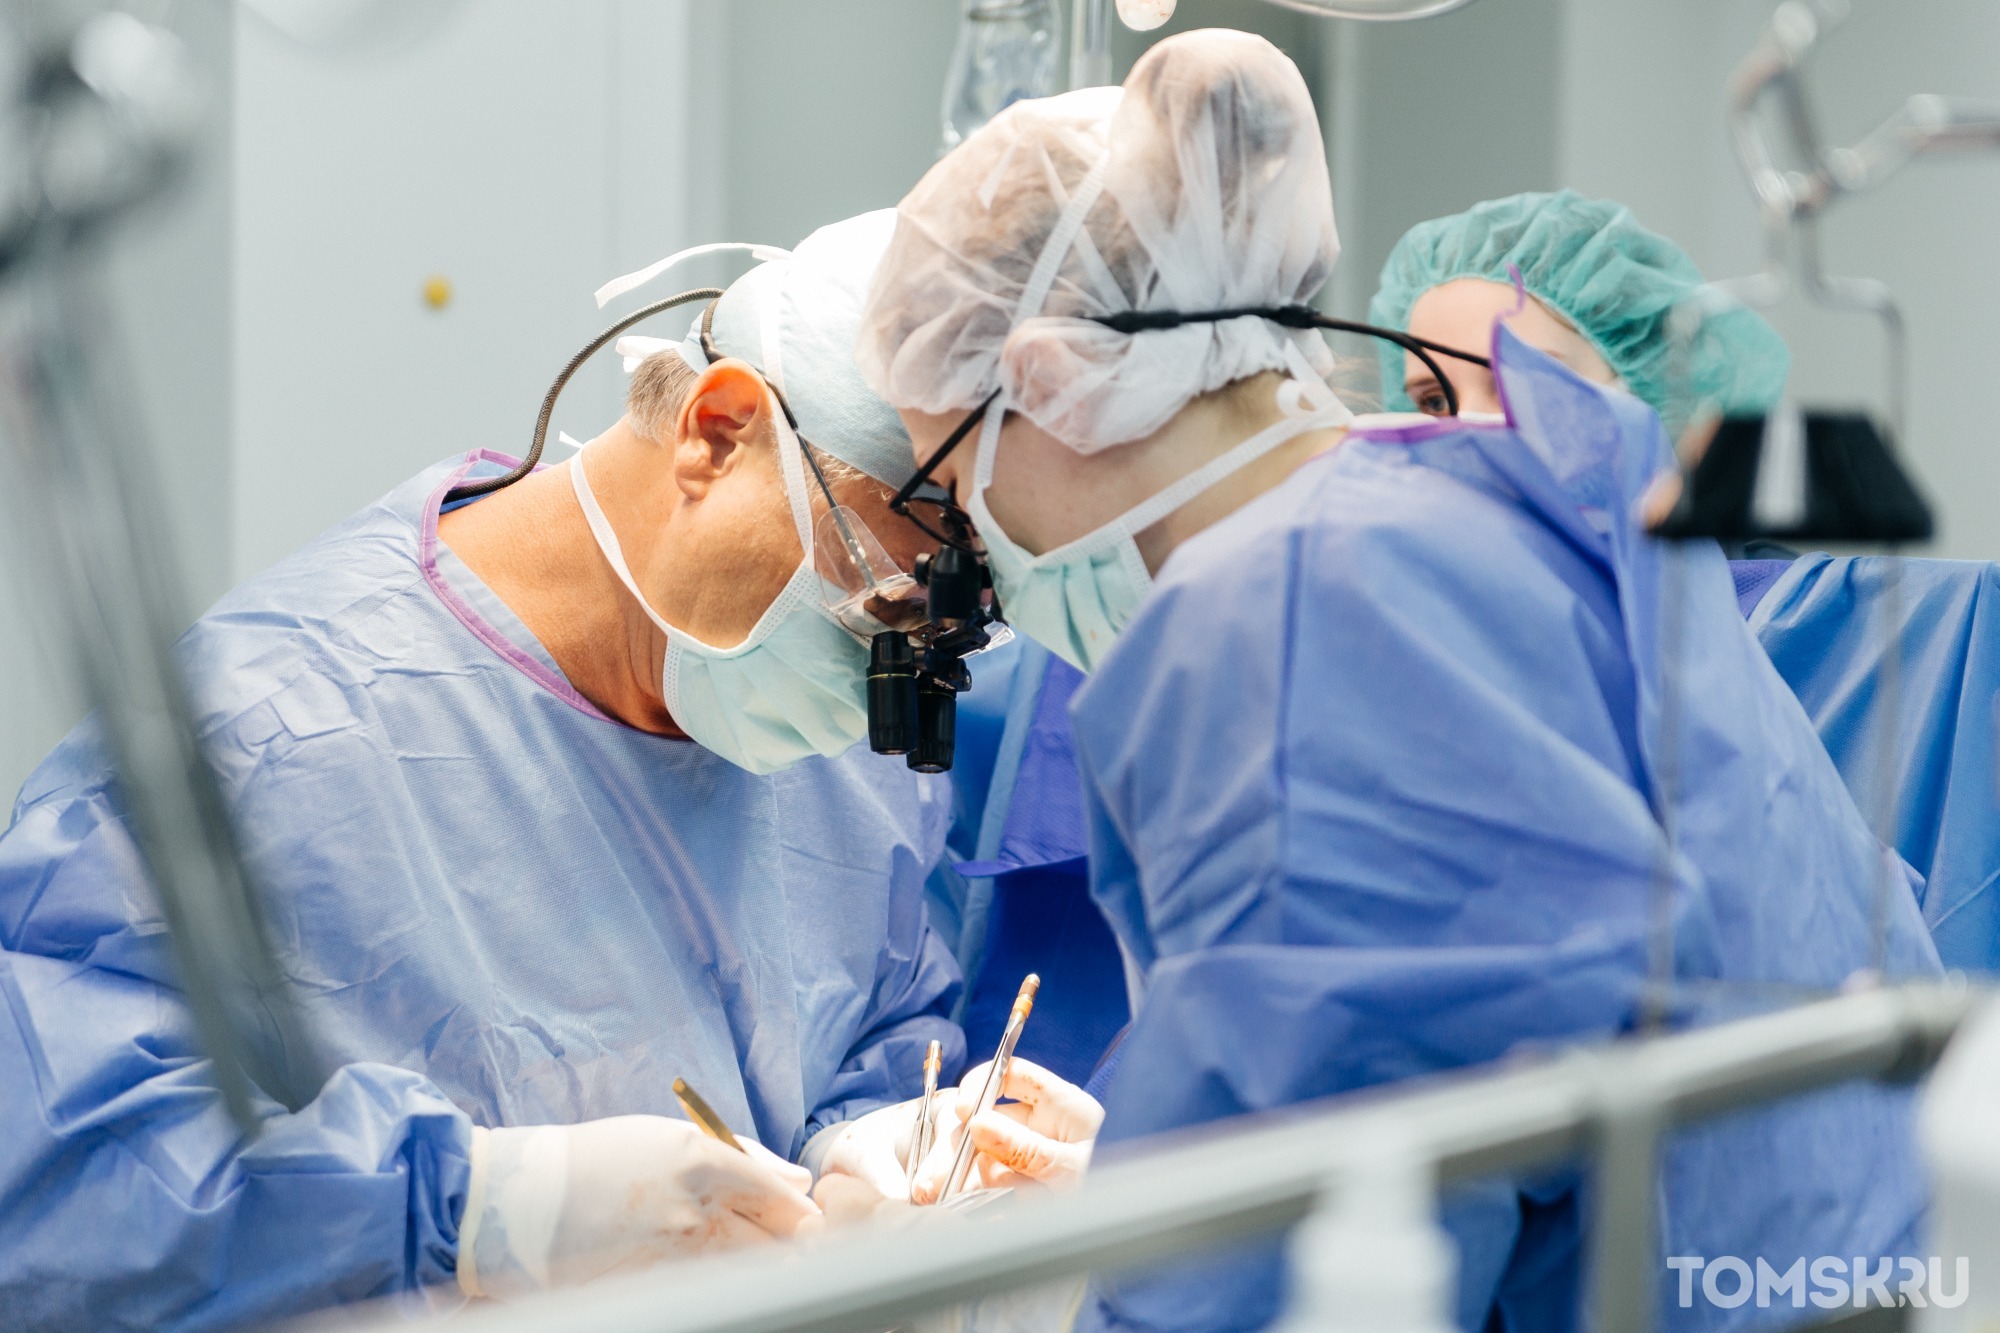 Томские хирурги восстановили женщине утраченную грудь 